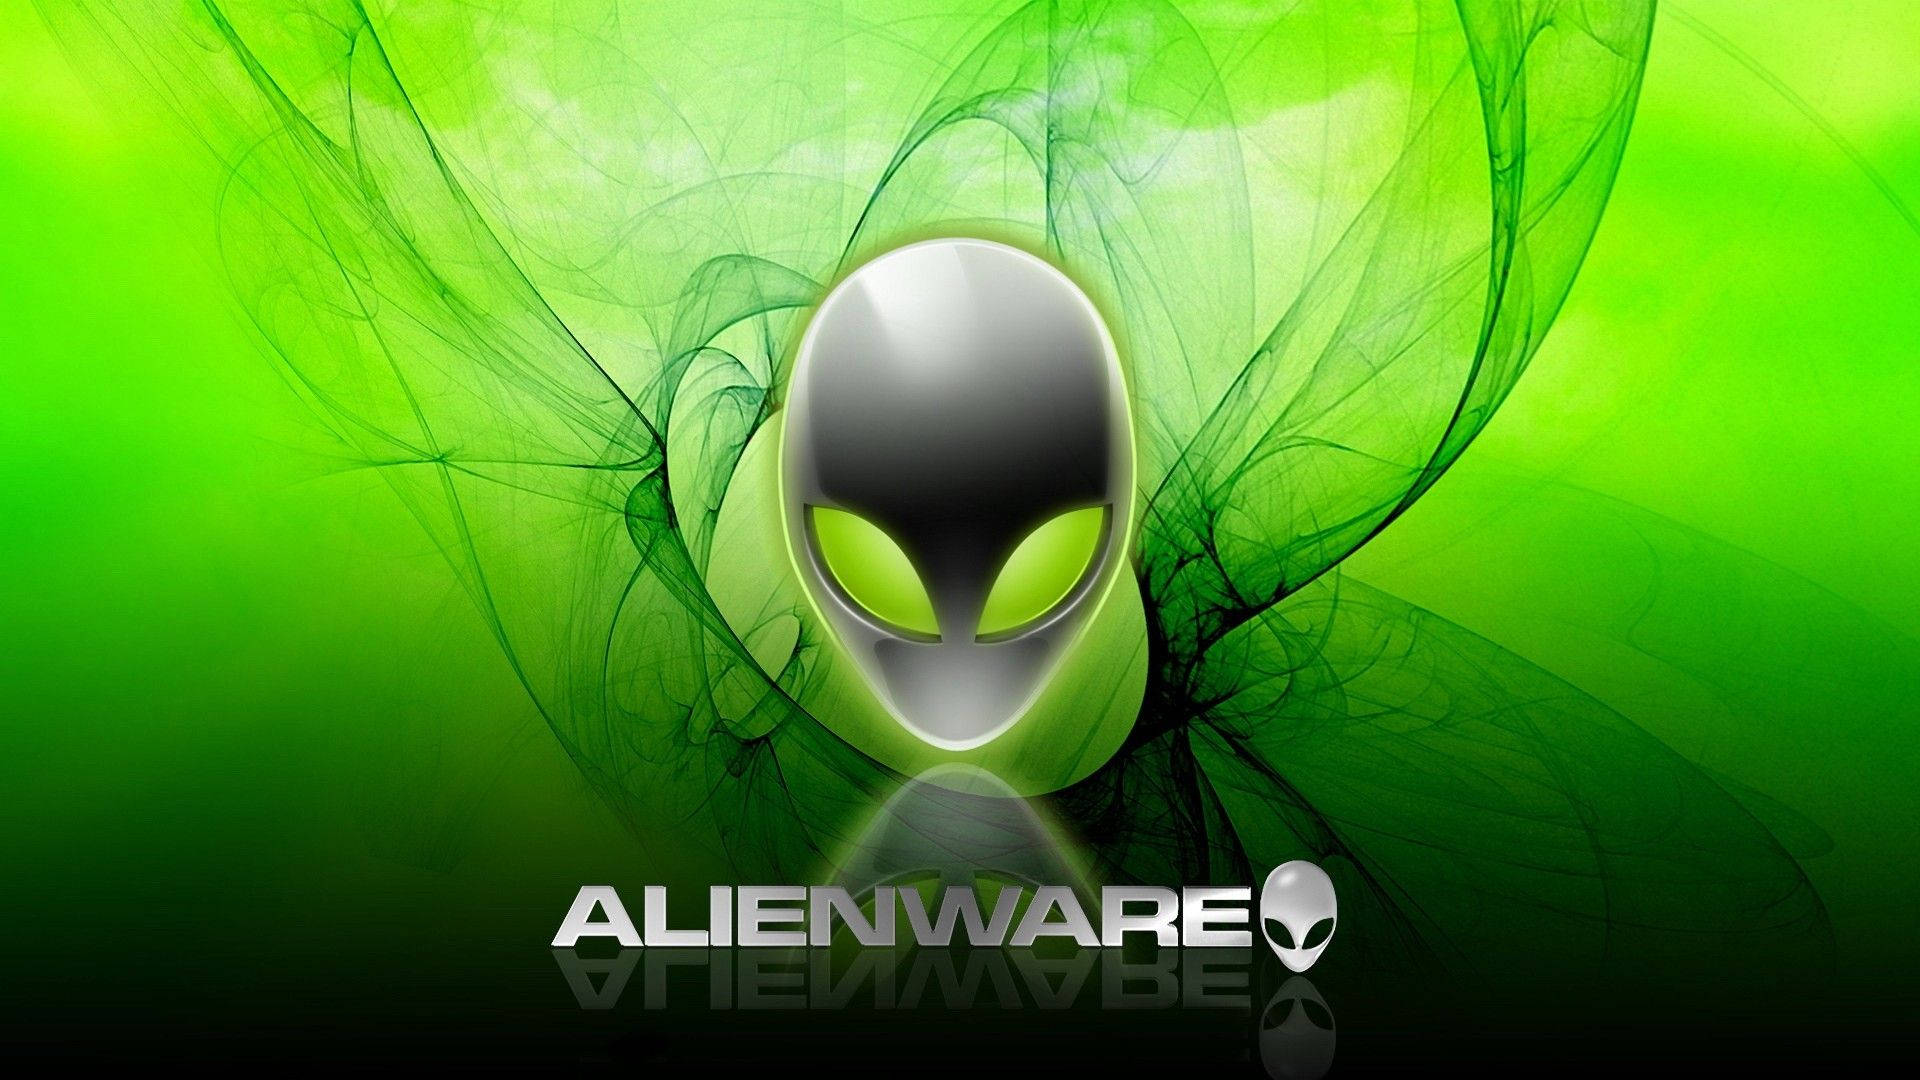 Alienware Wallpaper Images